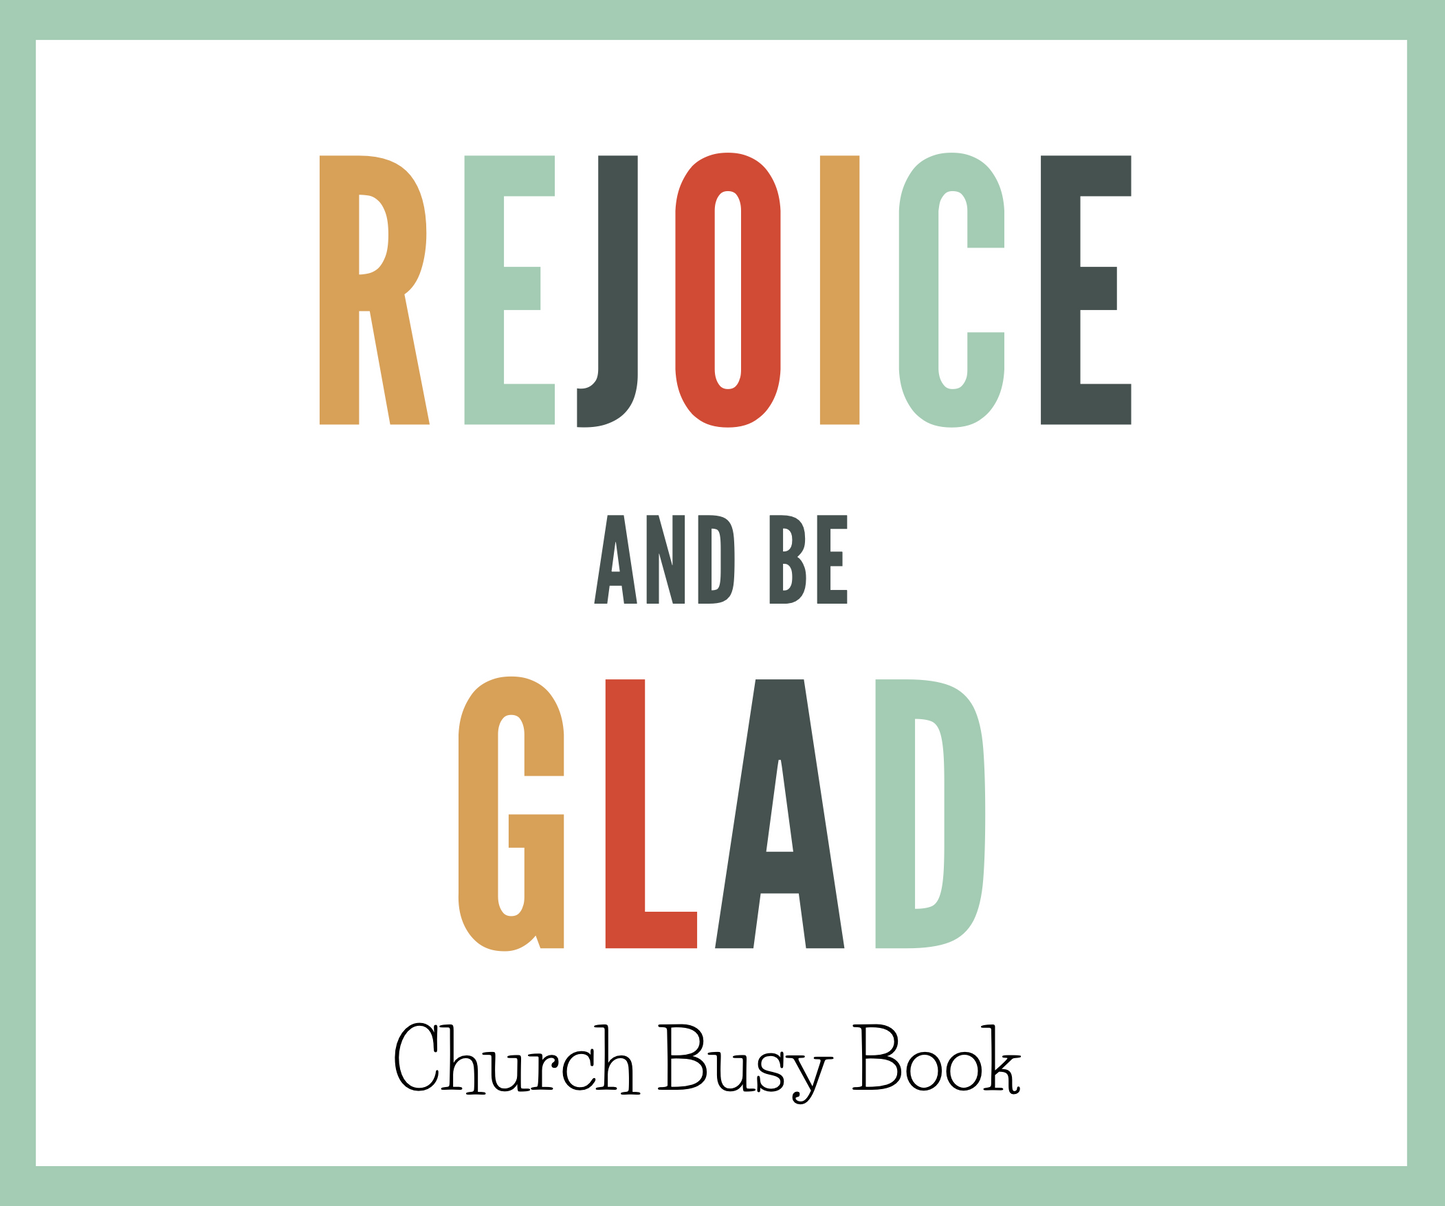 Church Busy Book